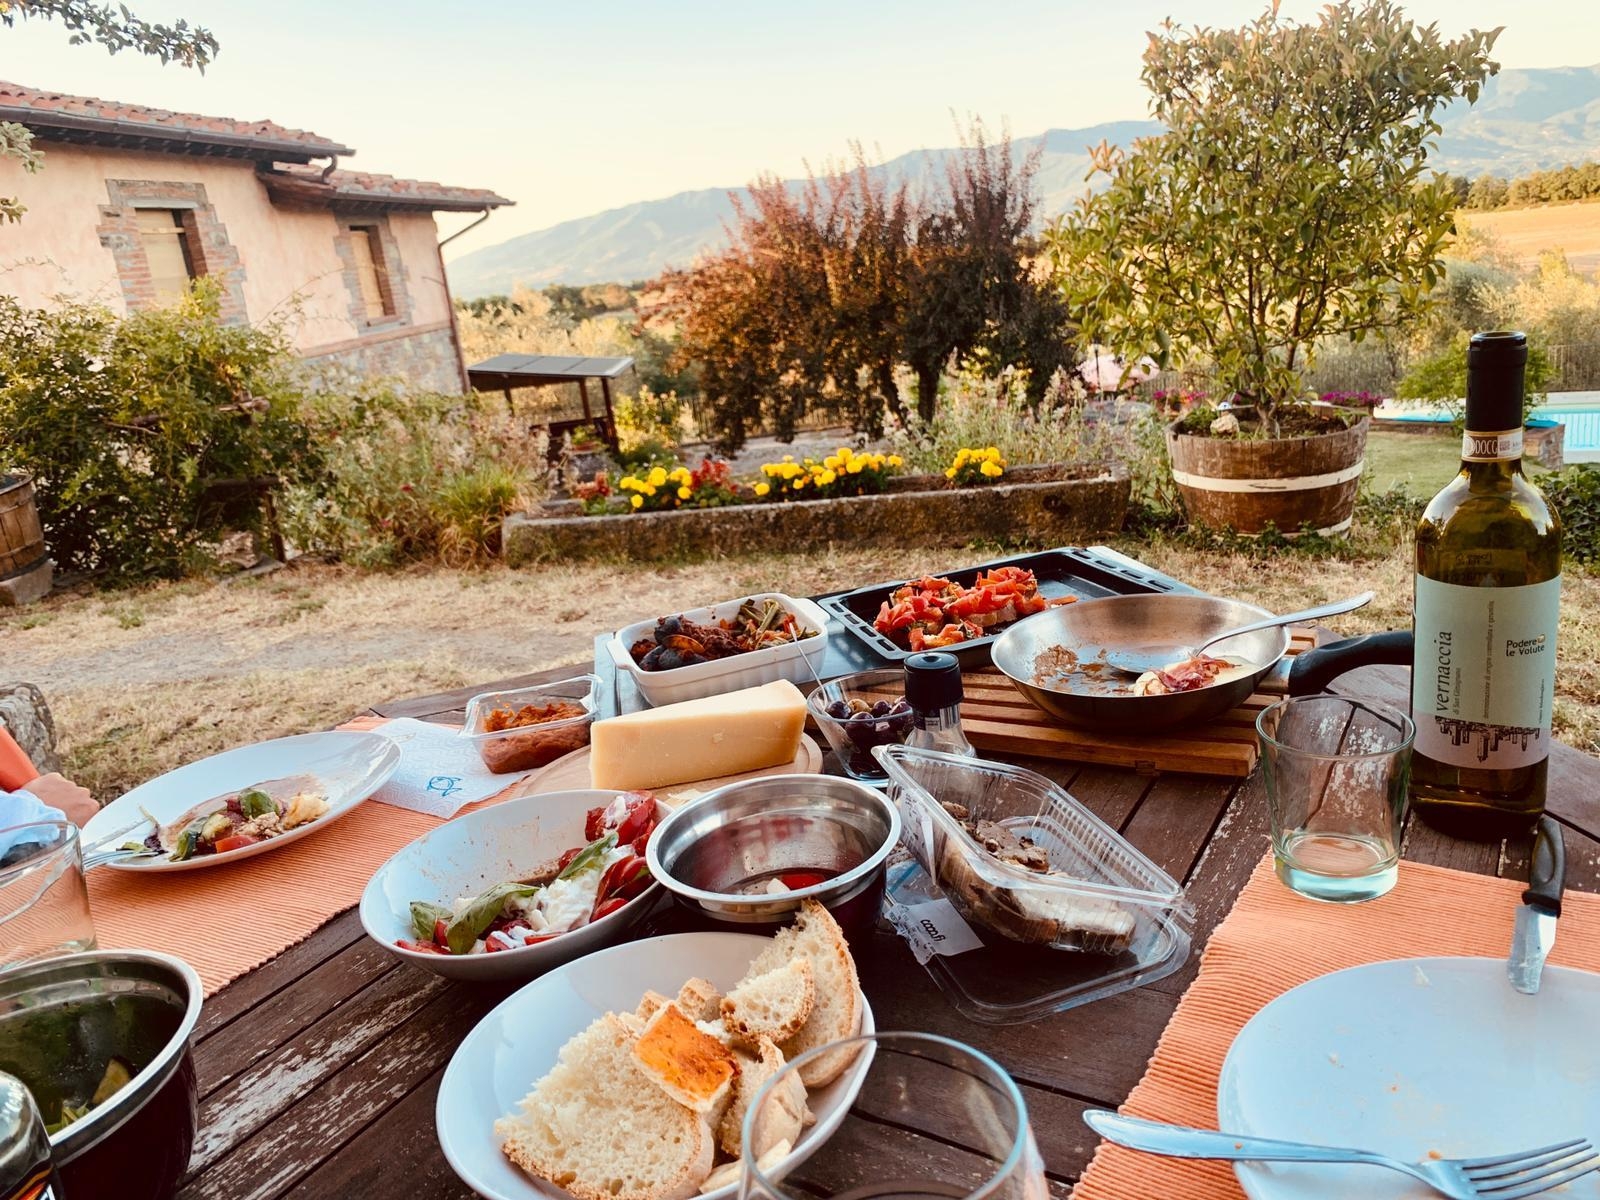 #outdoorweek #summerfood 
Bella Italia 😍😋🍷 Traum-Sommer-Essen in der Toskana 😍